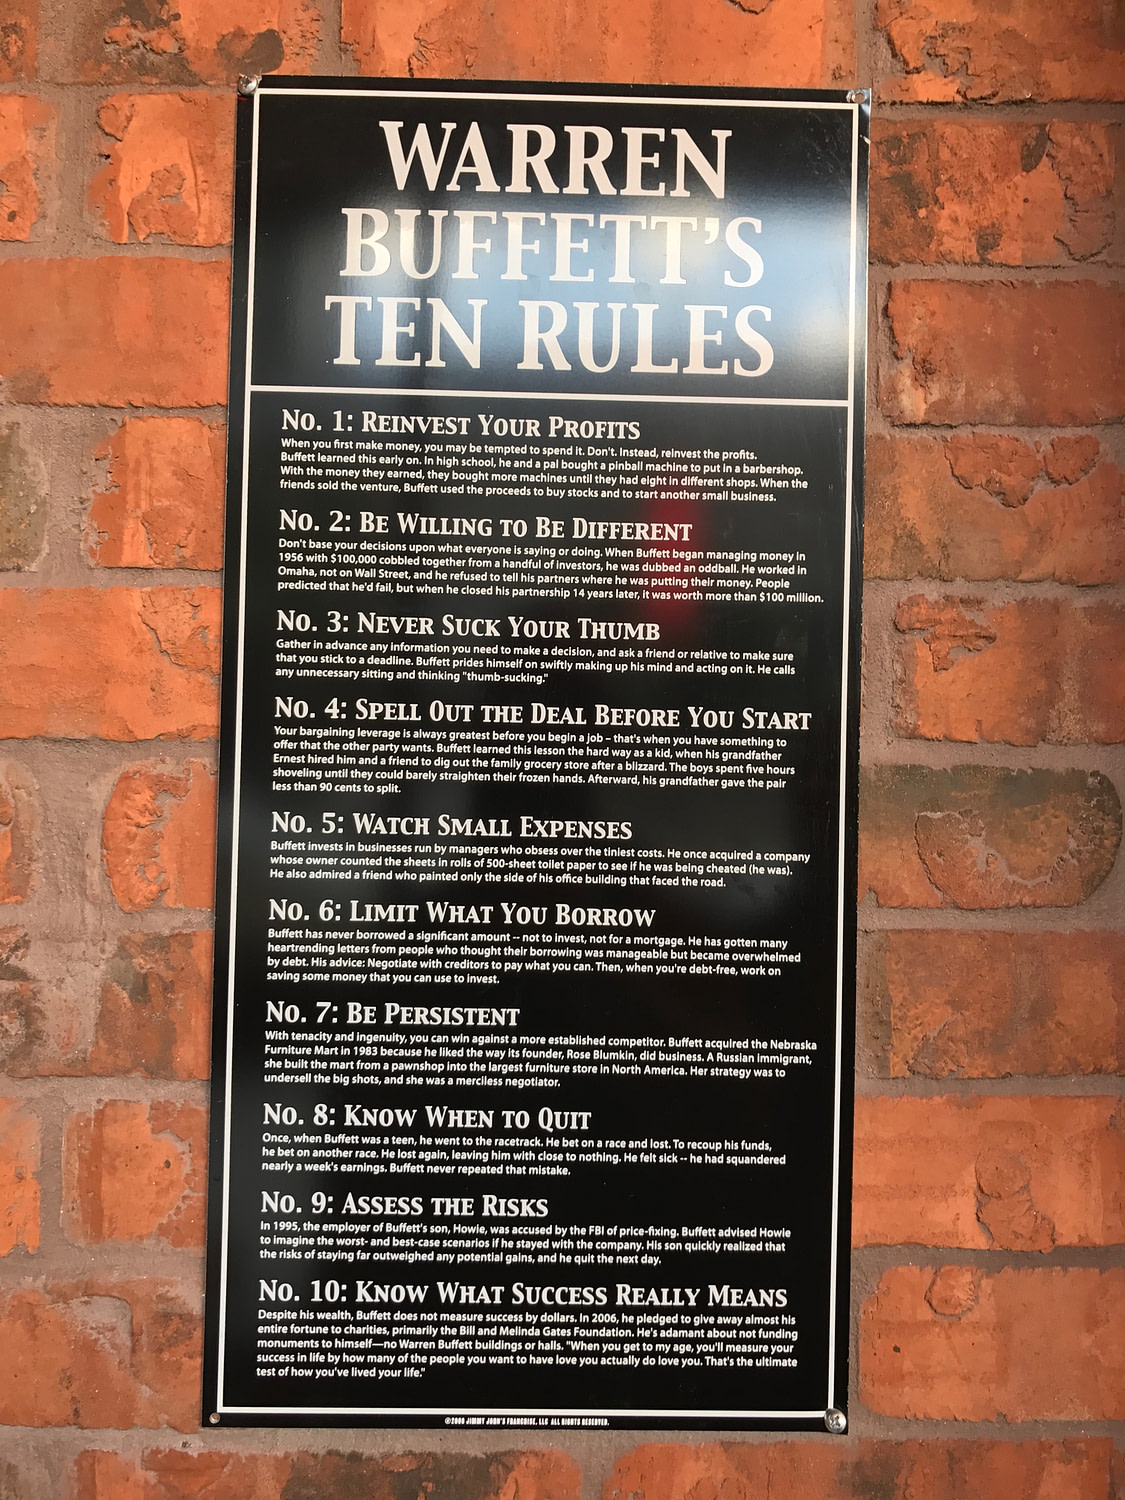 Warren Buffett's Ten Rules